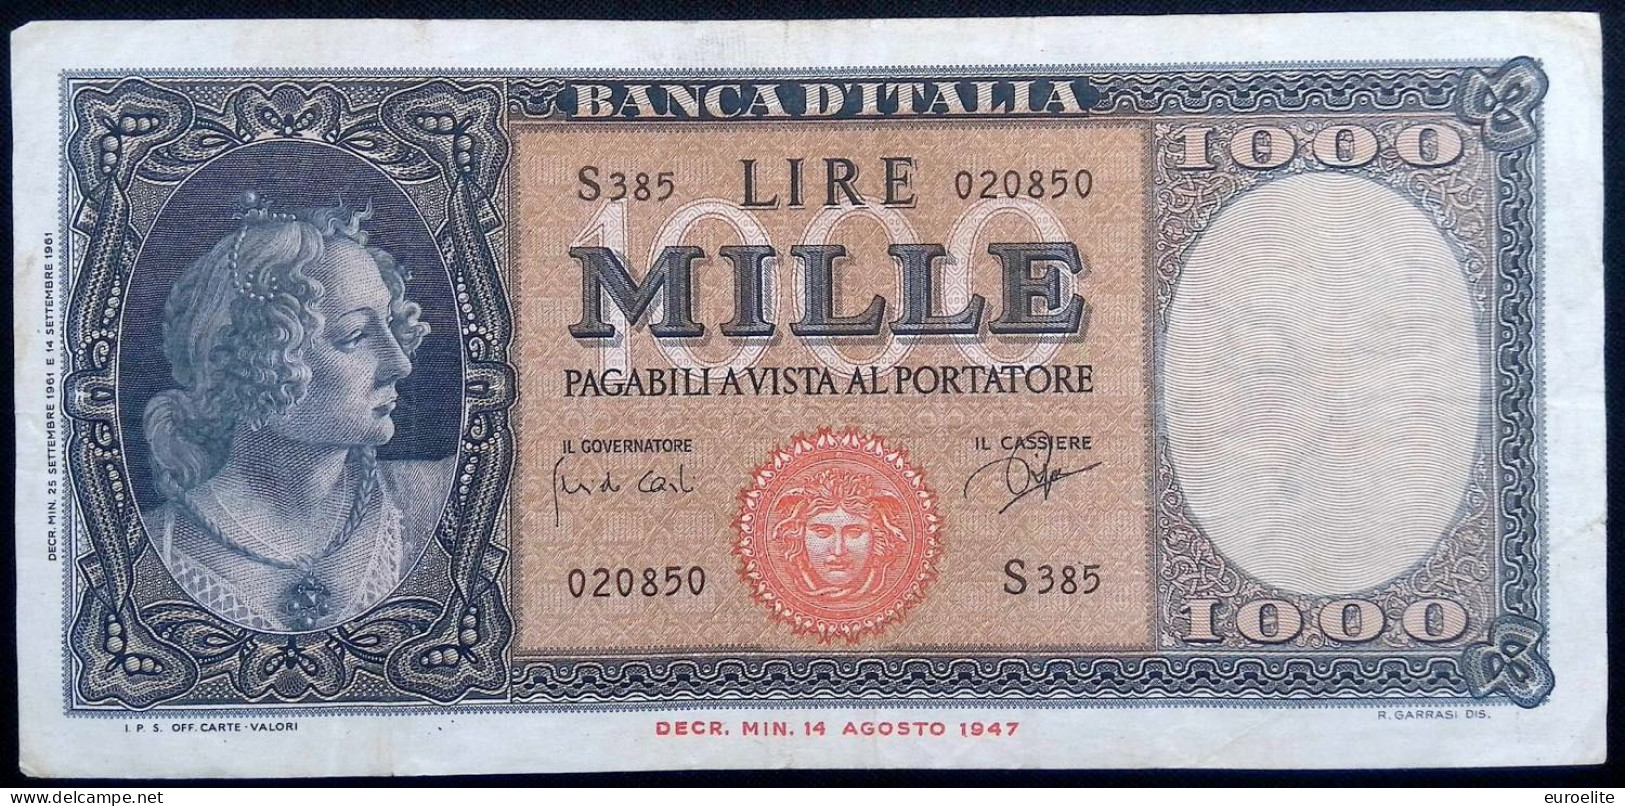 Repubblica Italiana - 1000 Lire Italia (Medusa) - 2.000 Lire